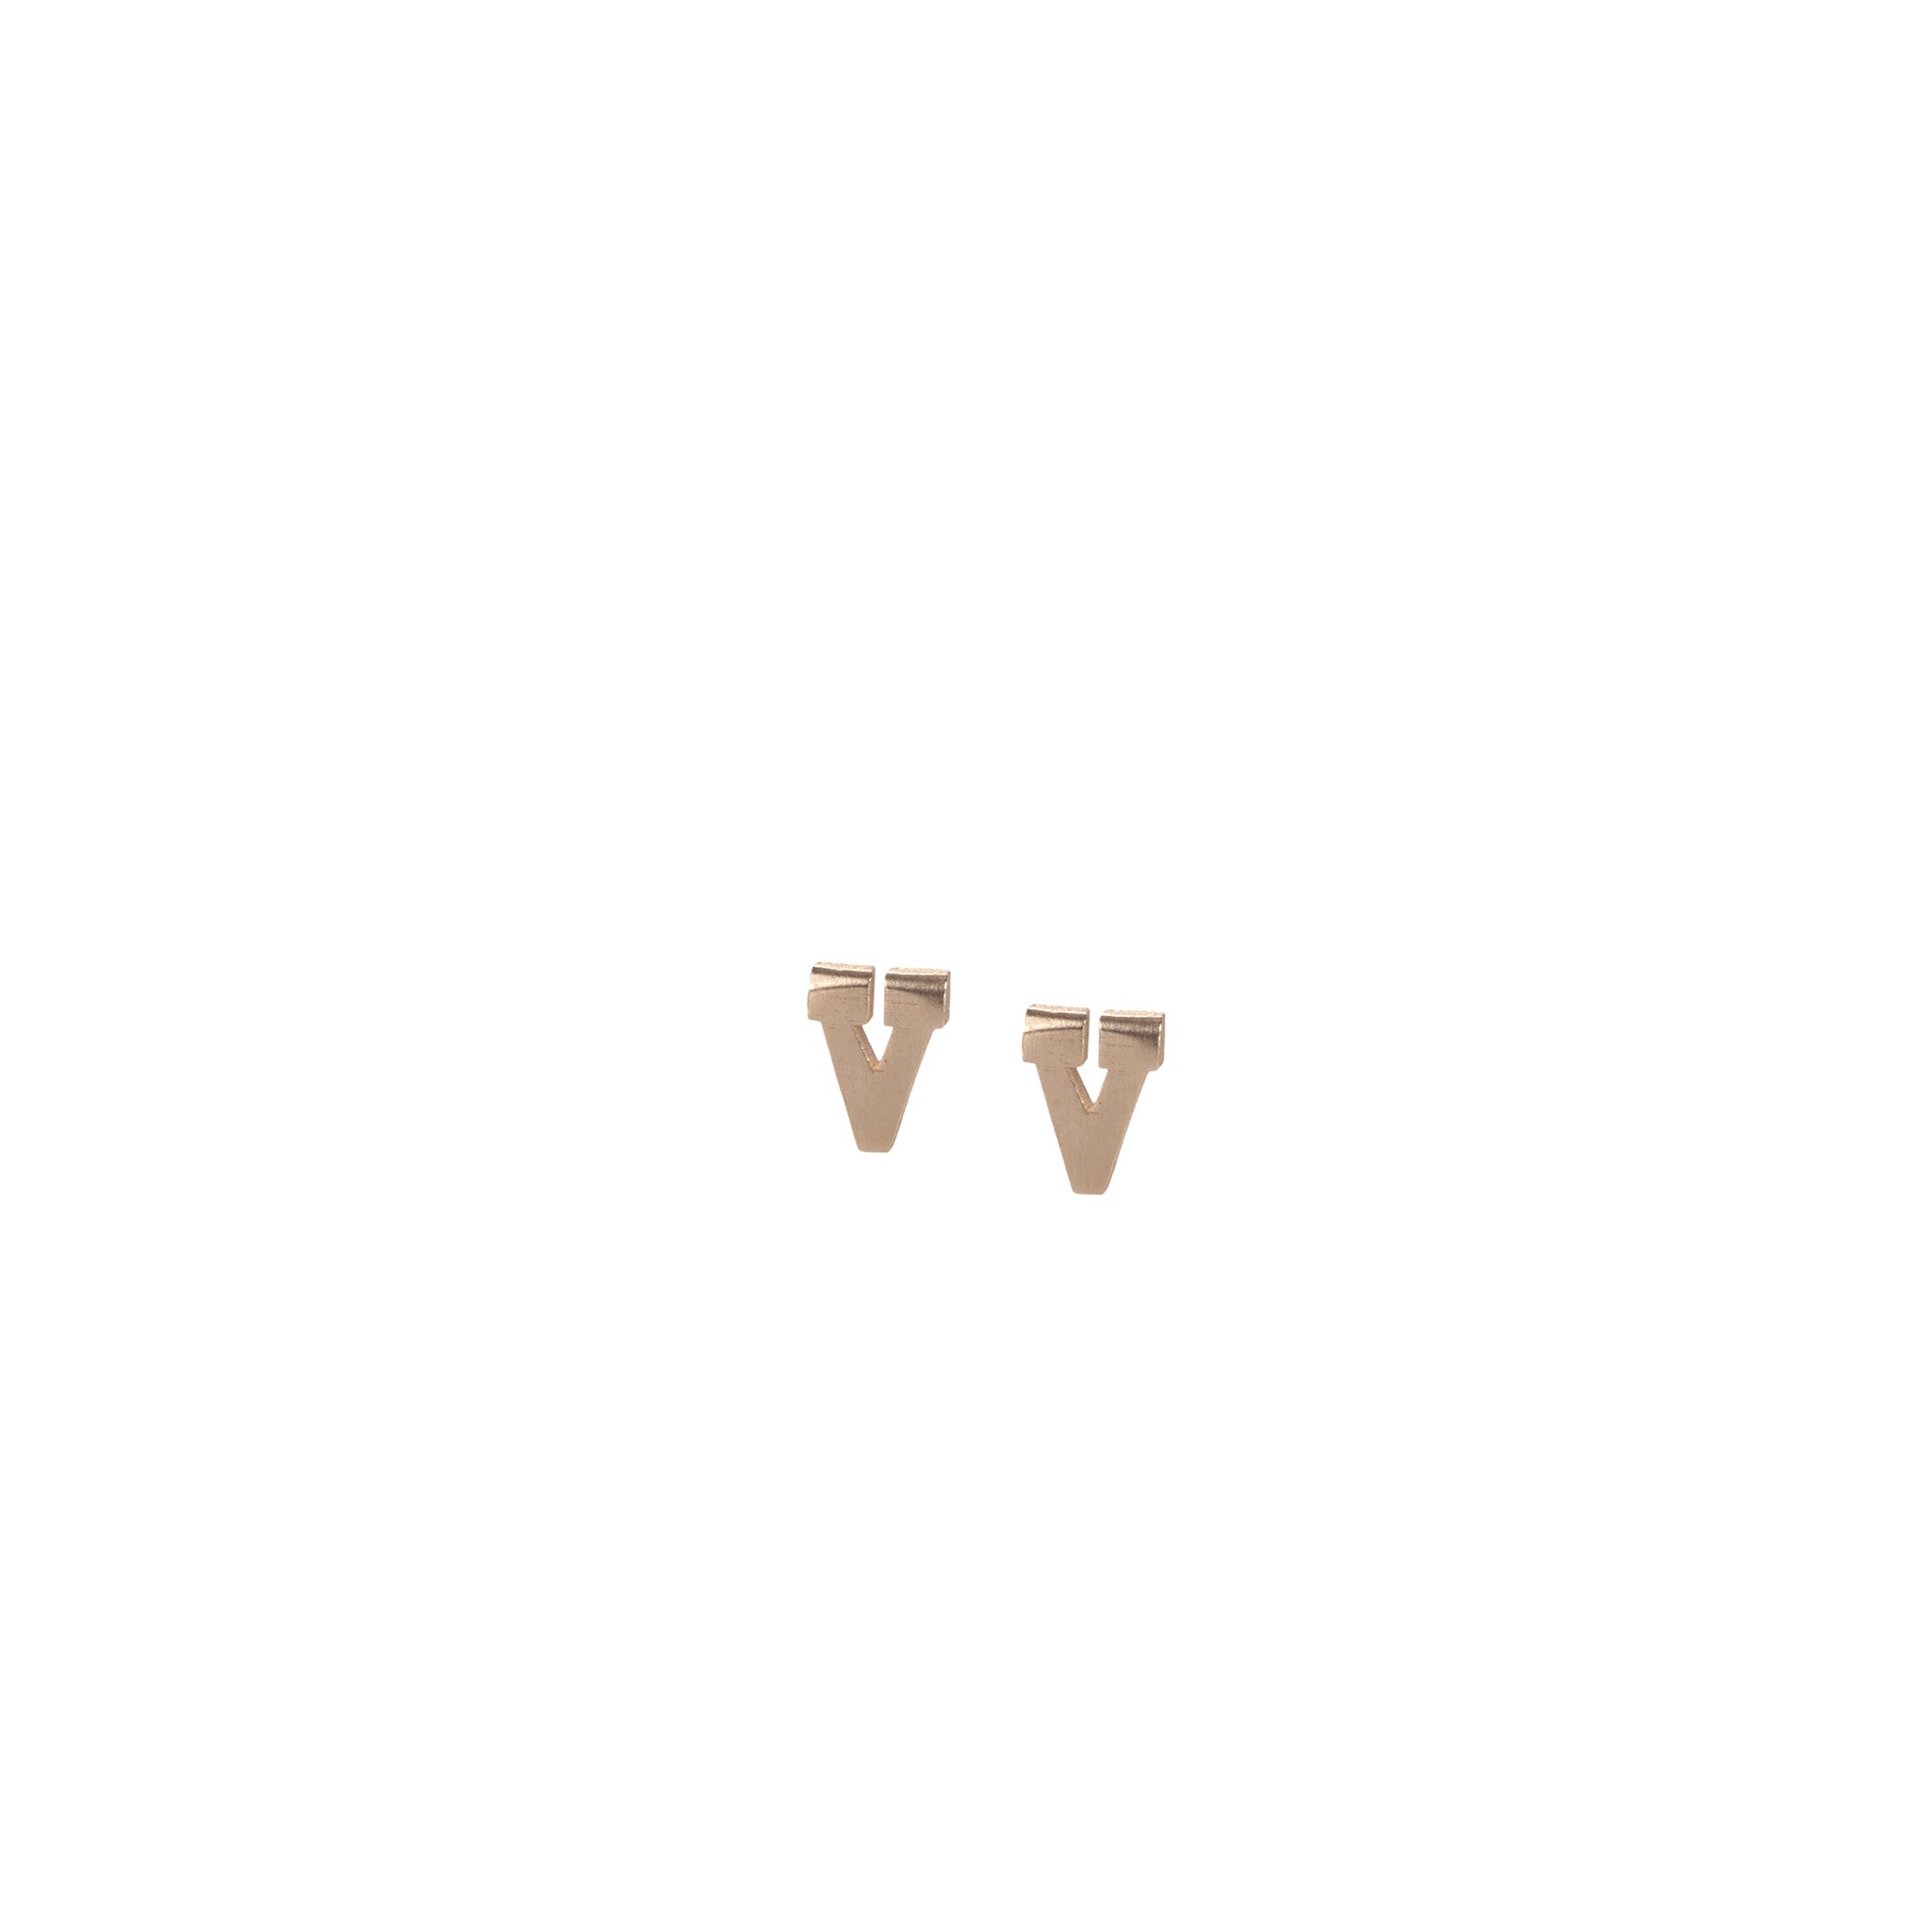 V - 14k gold studs earrings